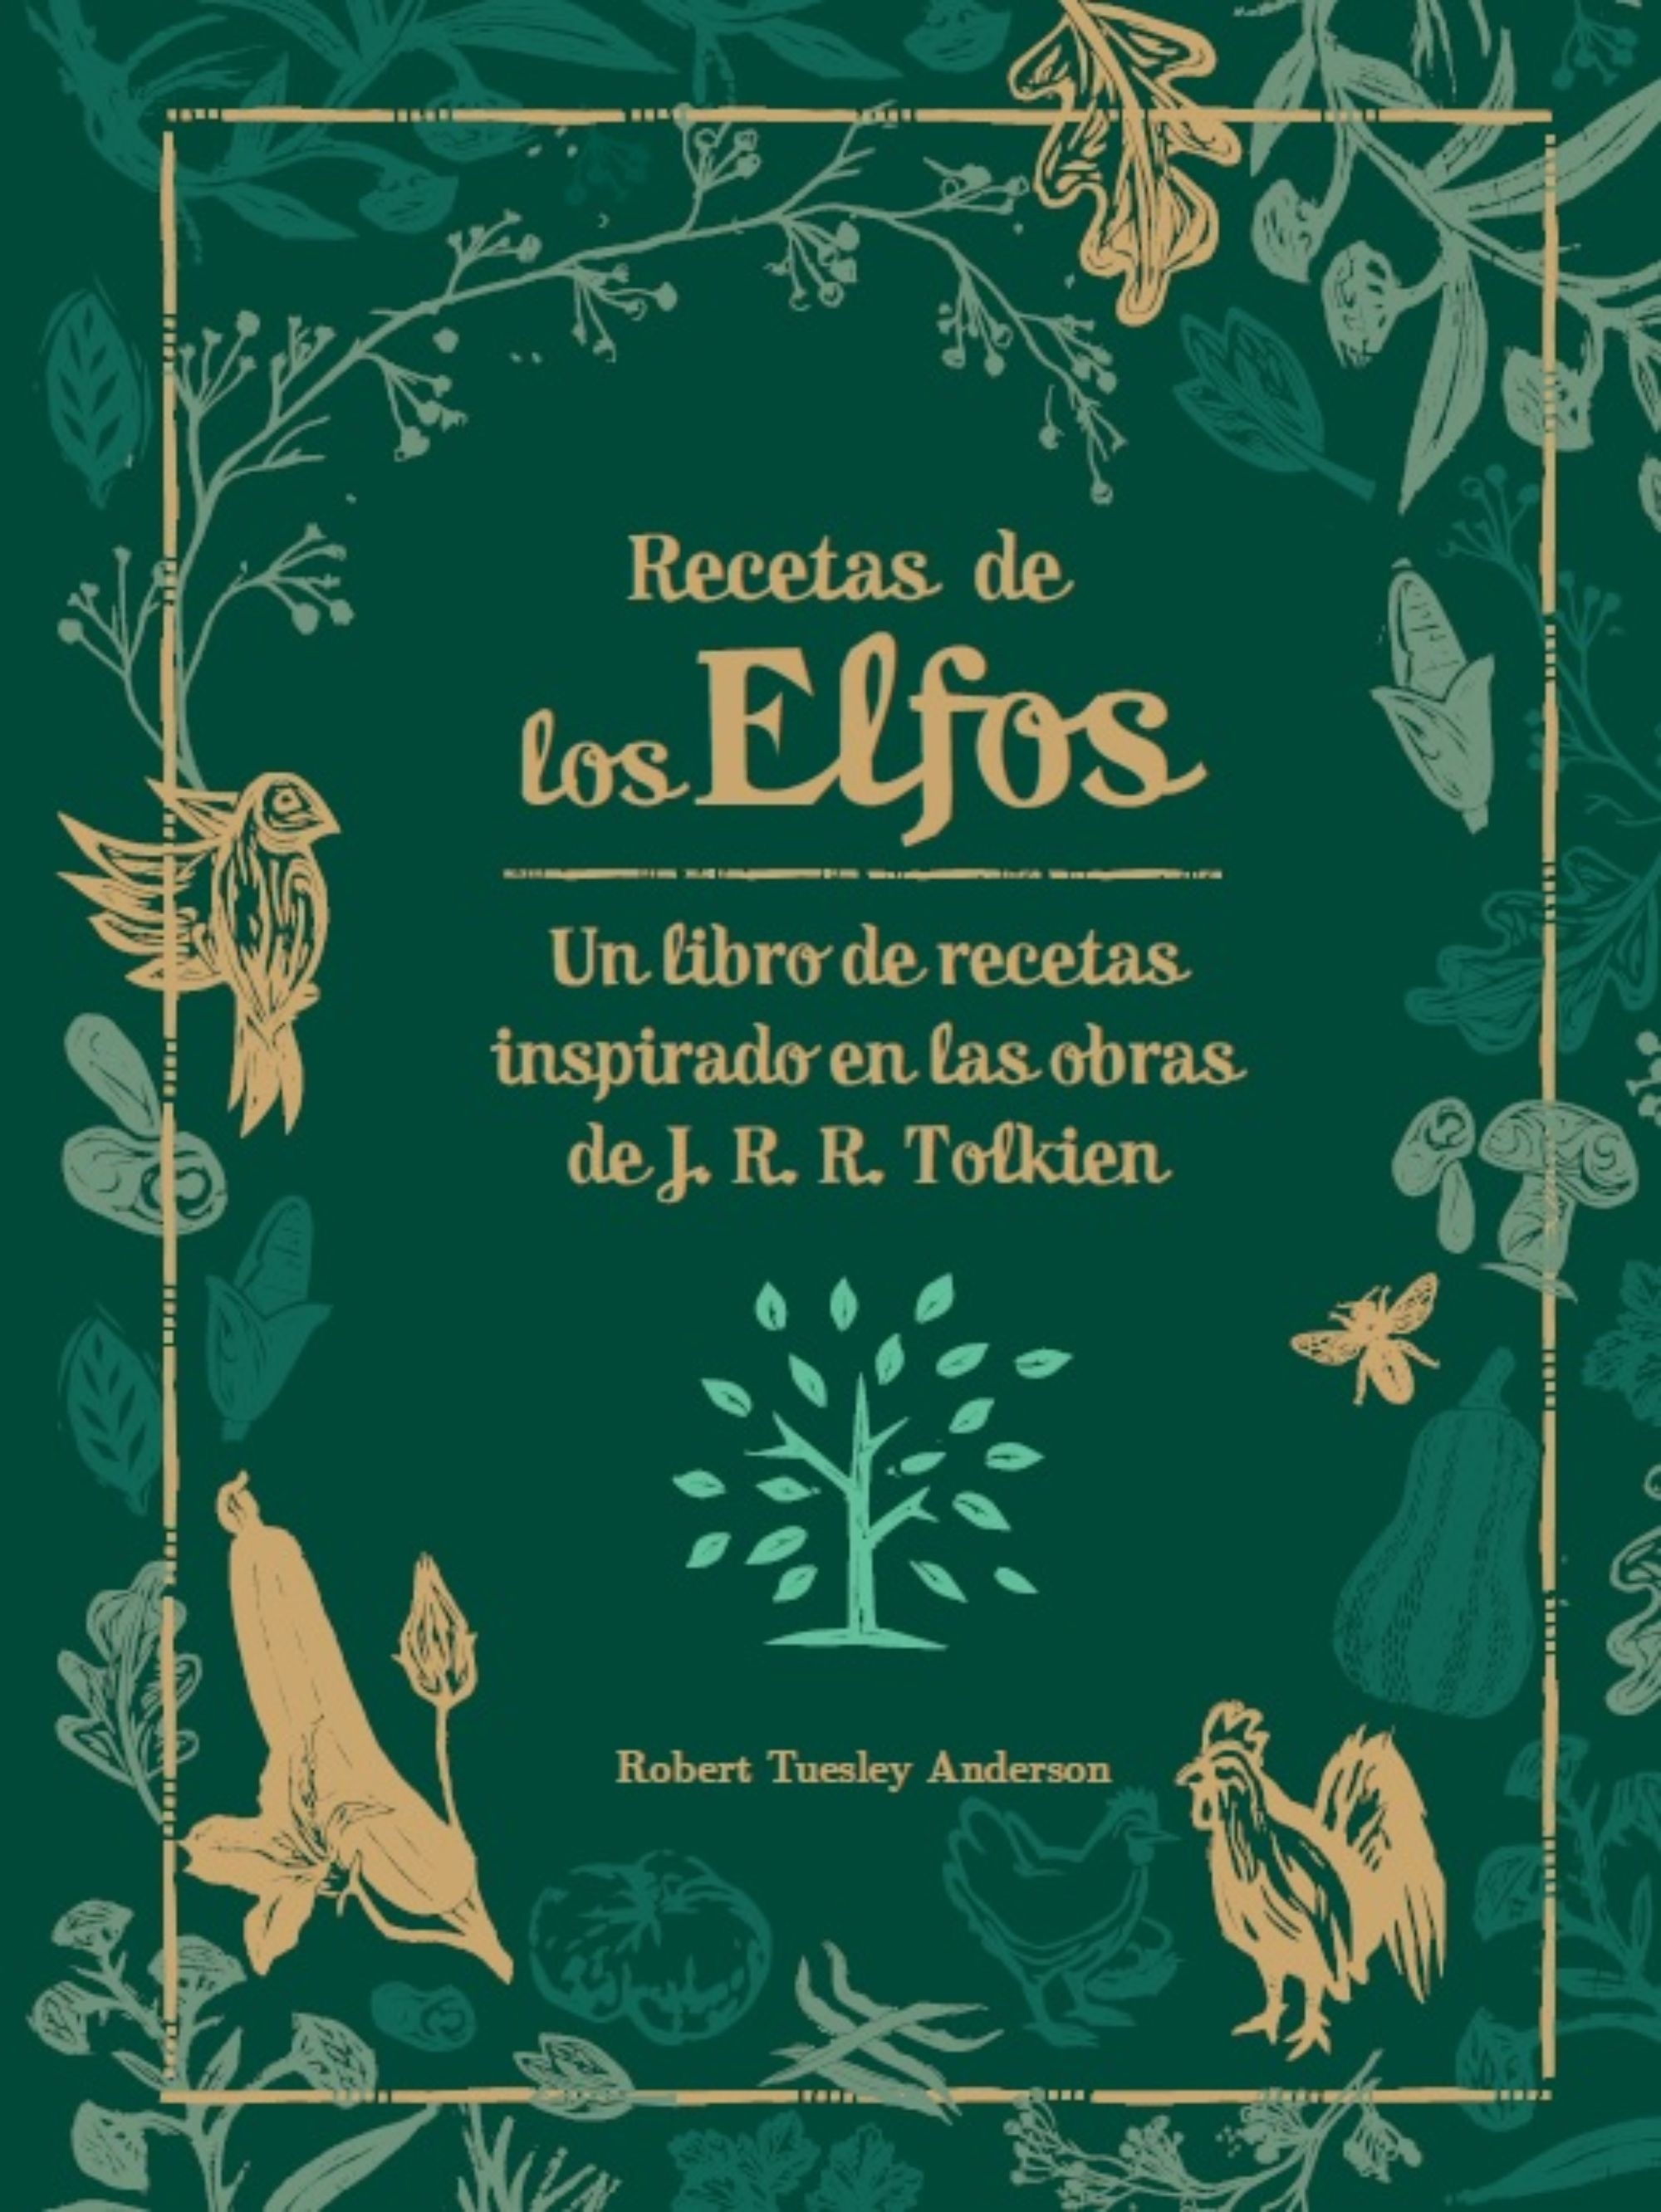 Recetas de los Elfos "Un libro de recetas inspirado en las obras de J.R.R. Tolkien". 